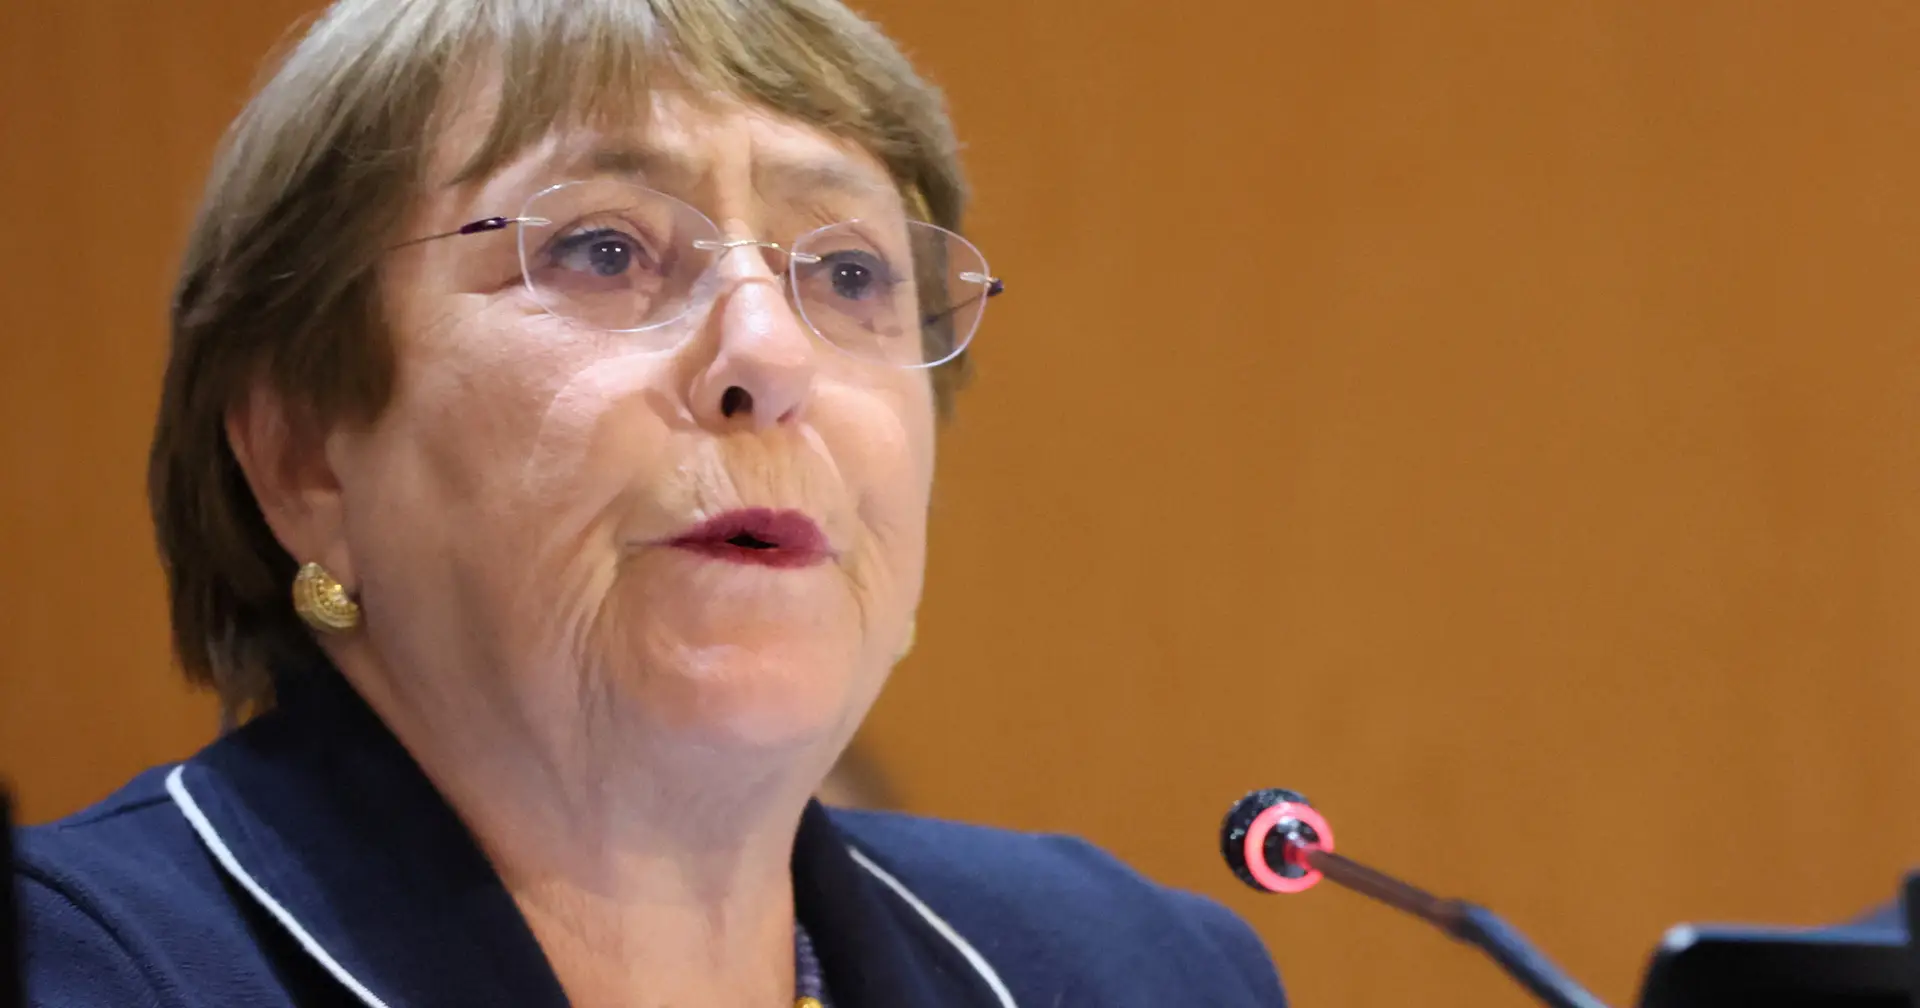 Proibir o aborto nos EUA significaria um atraso nos direitos das mulheres, diz Bachelet